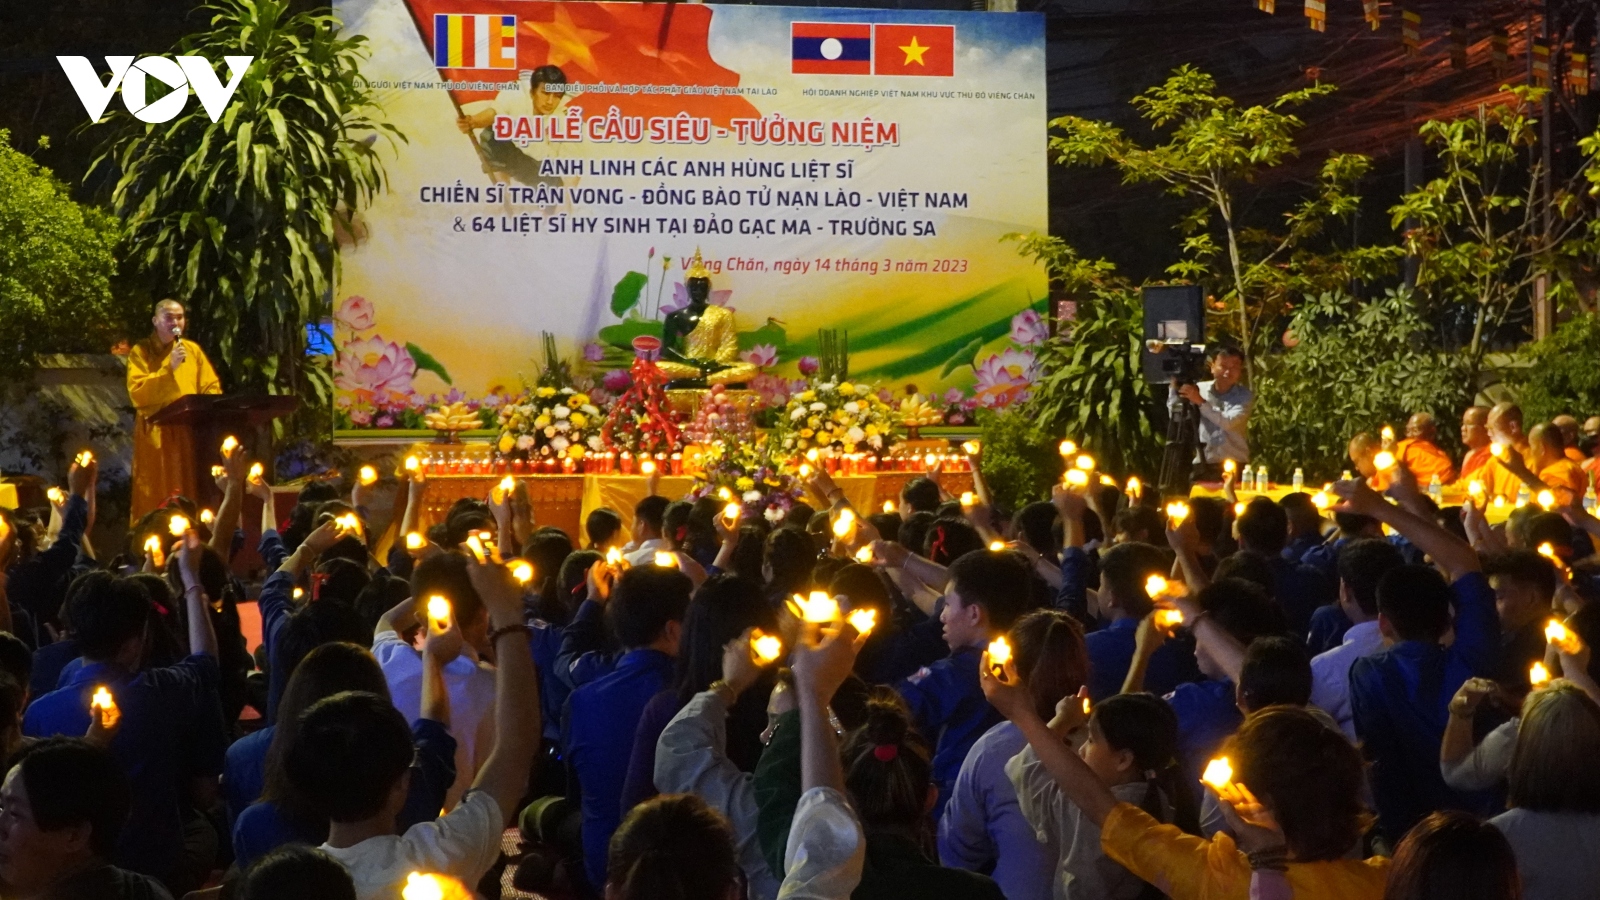 Cộng đồng người Việt Nam tại Lào tổ chức Đại lễ cầu siêu 64 anh hùng liệt sĩ Gạc Ma